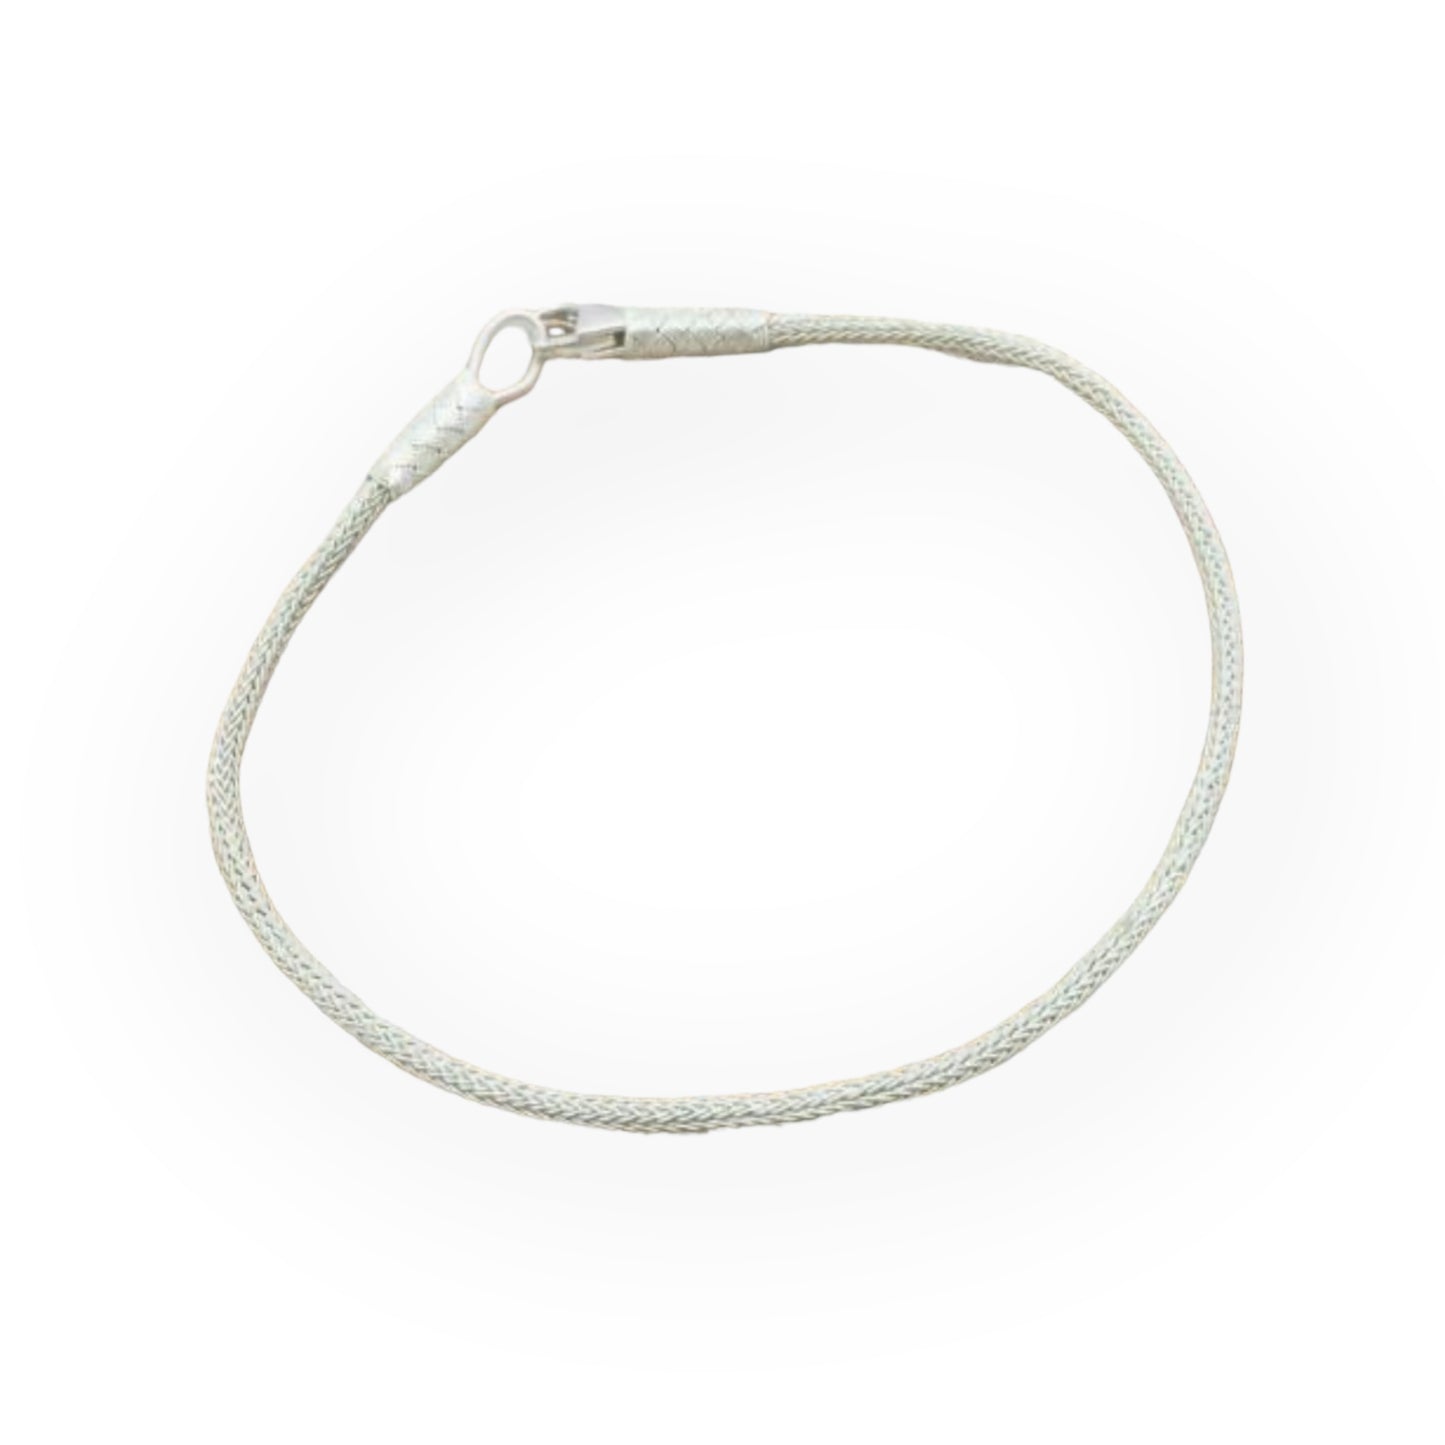 Zilver Armband - Handgeven van Puur Zilver Draaden ( 1000 karaat zilver )